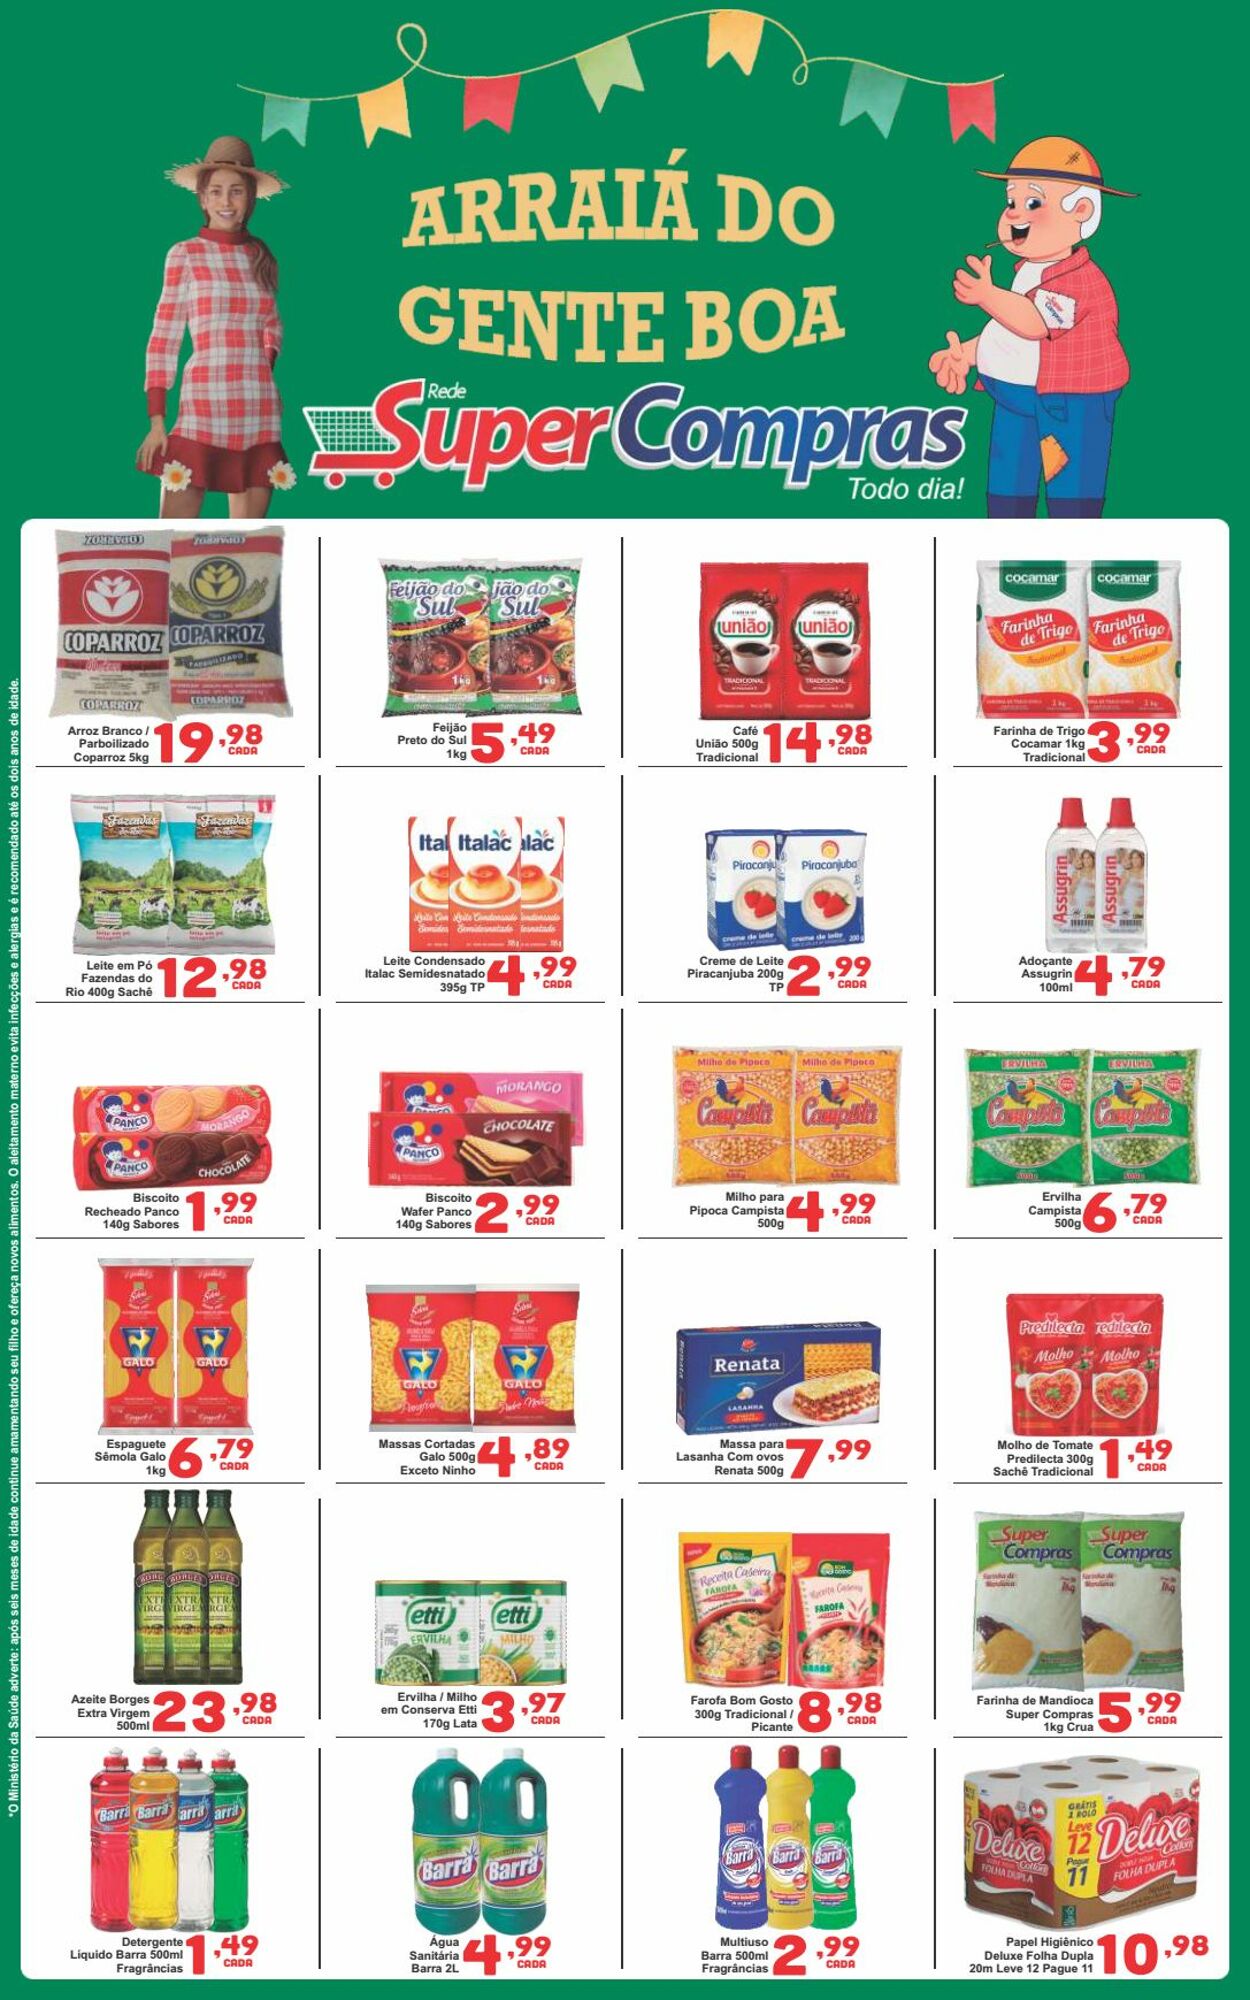 Folheto Super Compras 05.06.2023 - 08.06.2023